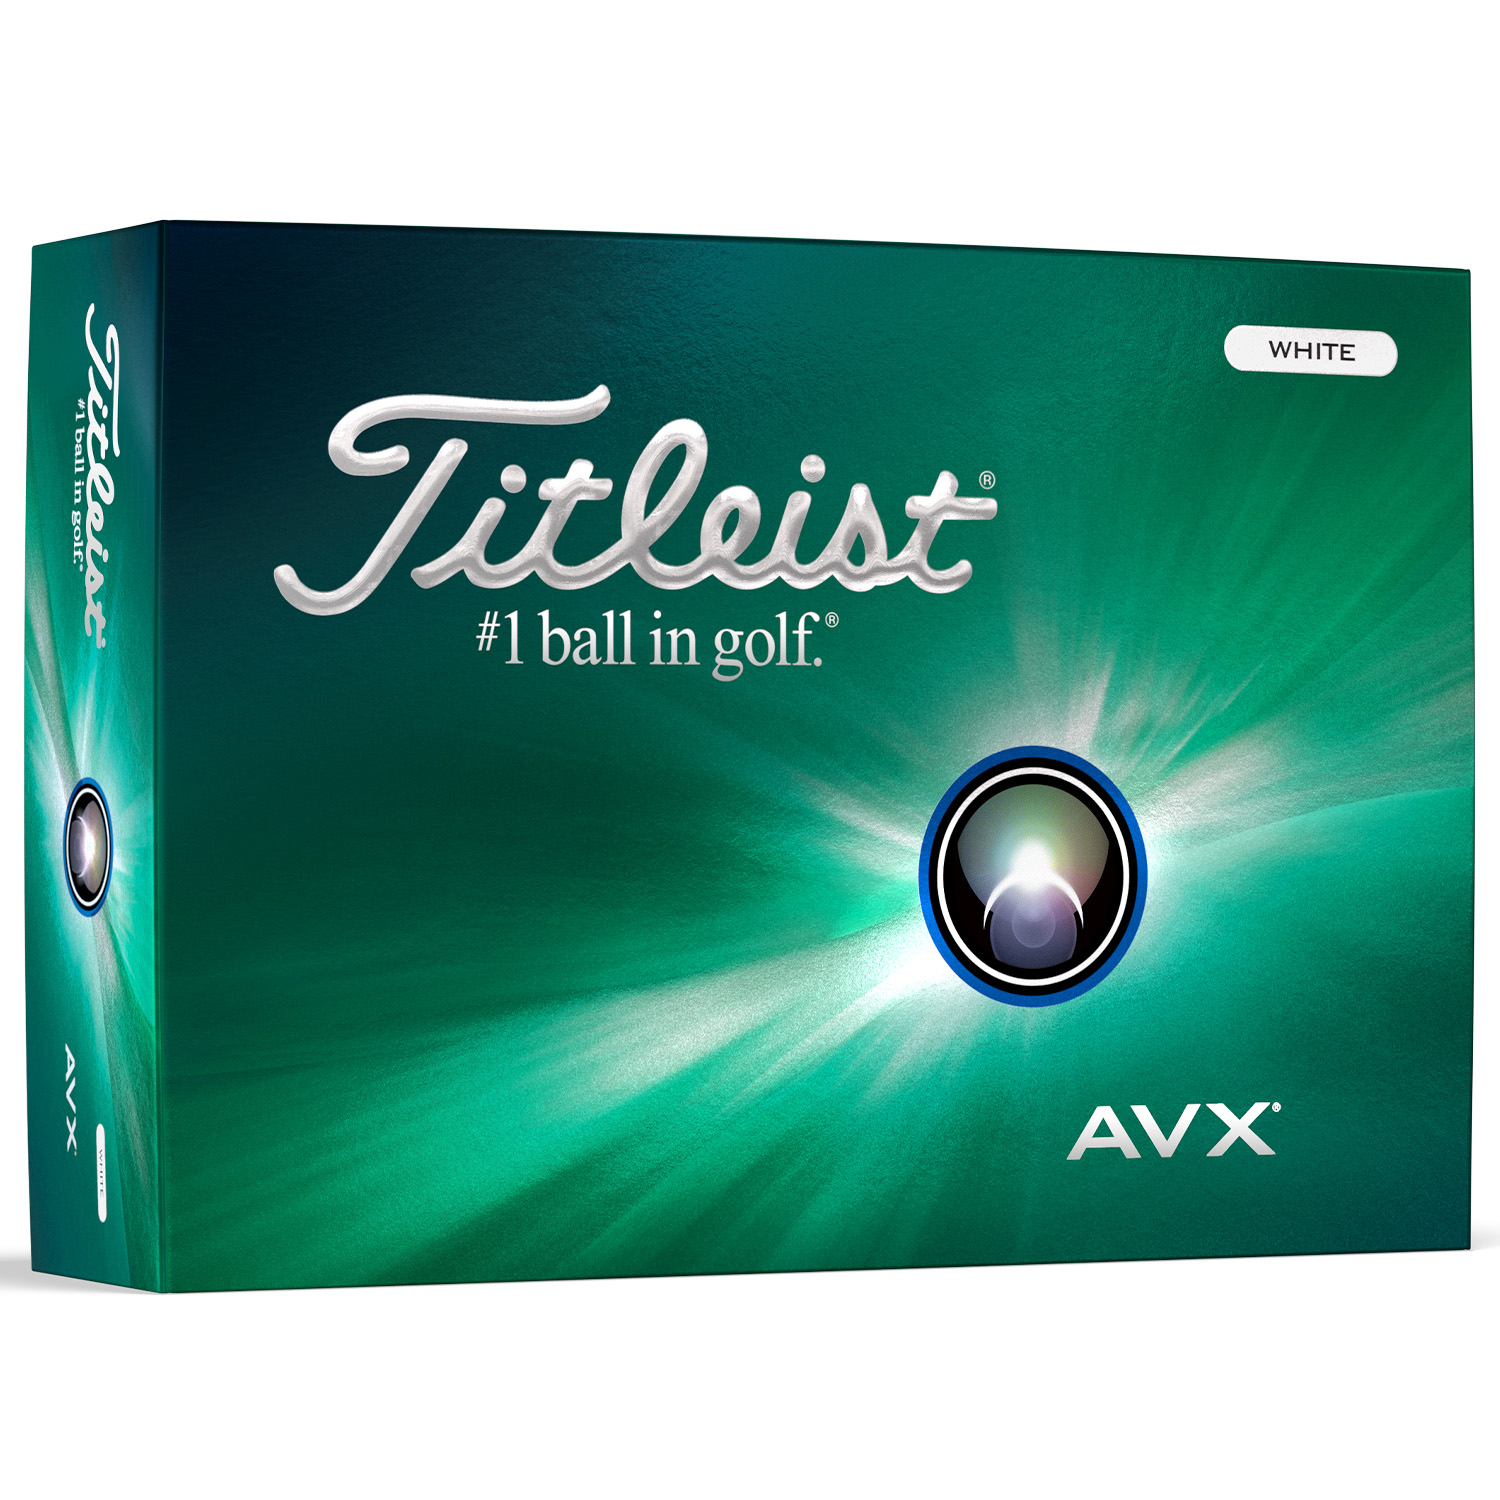 Image of Titleist AVX Golf Balls